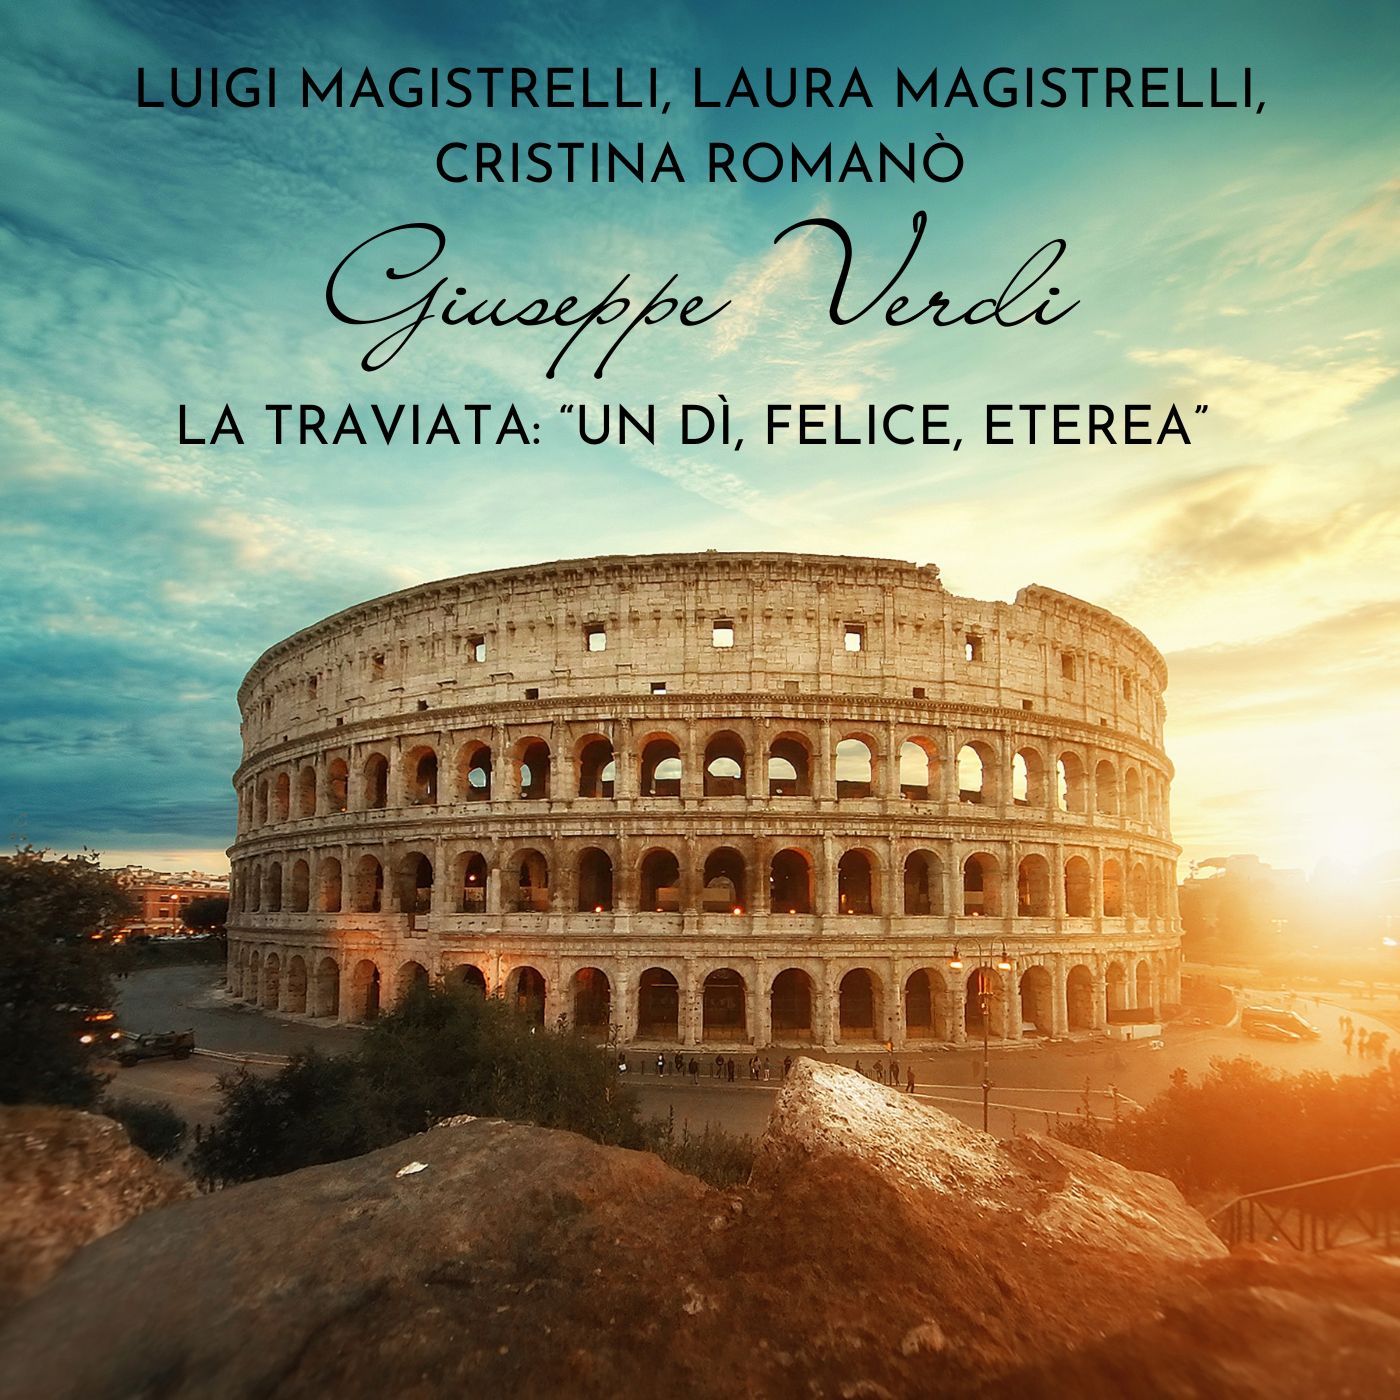 La Traviata: “Un dì, felice, eterea”